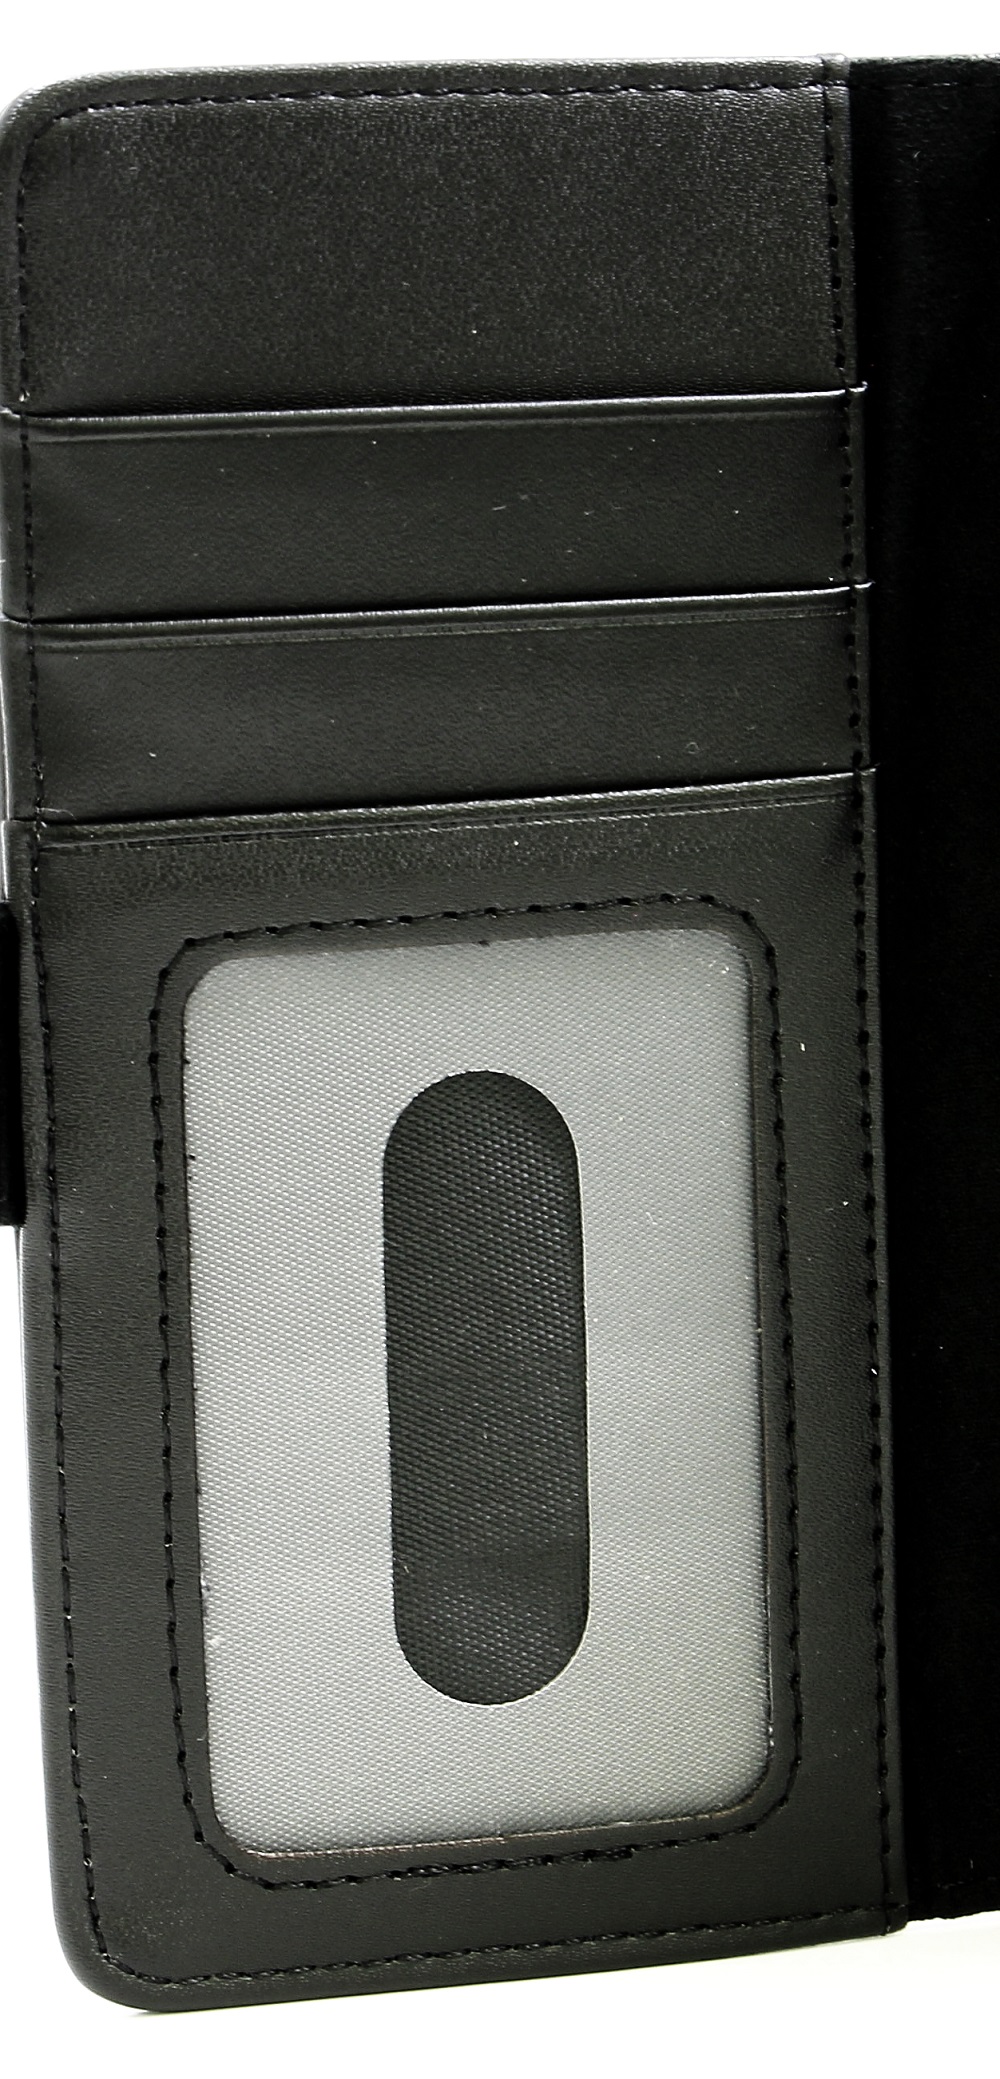 Magnet Wallet LG K4 2017 (M160)